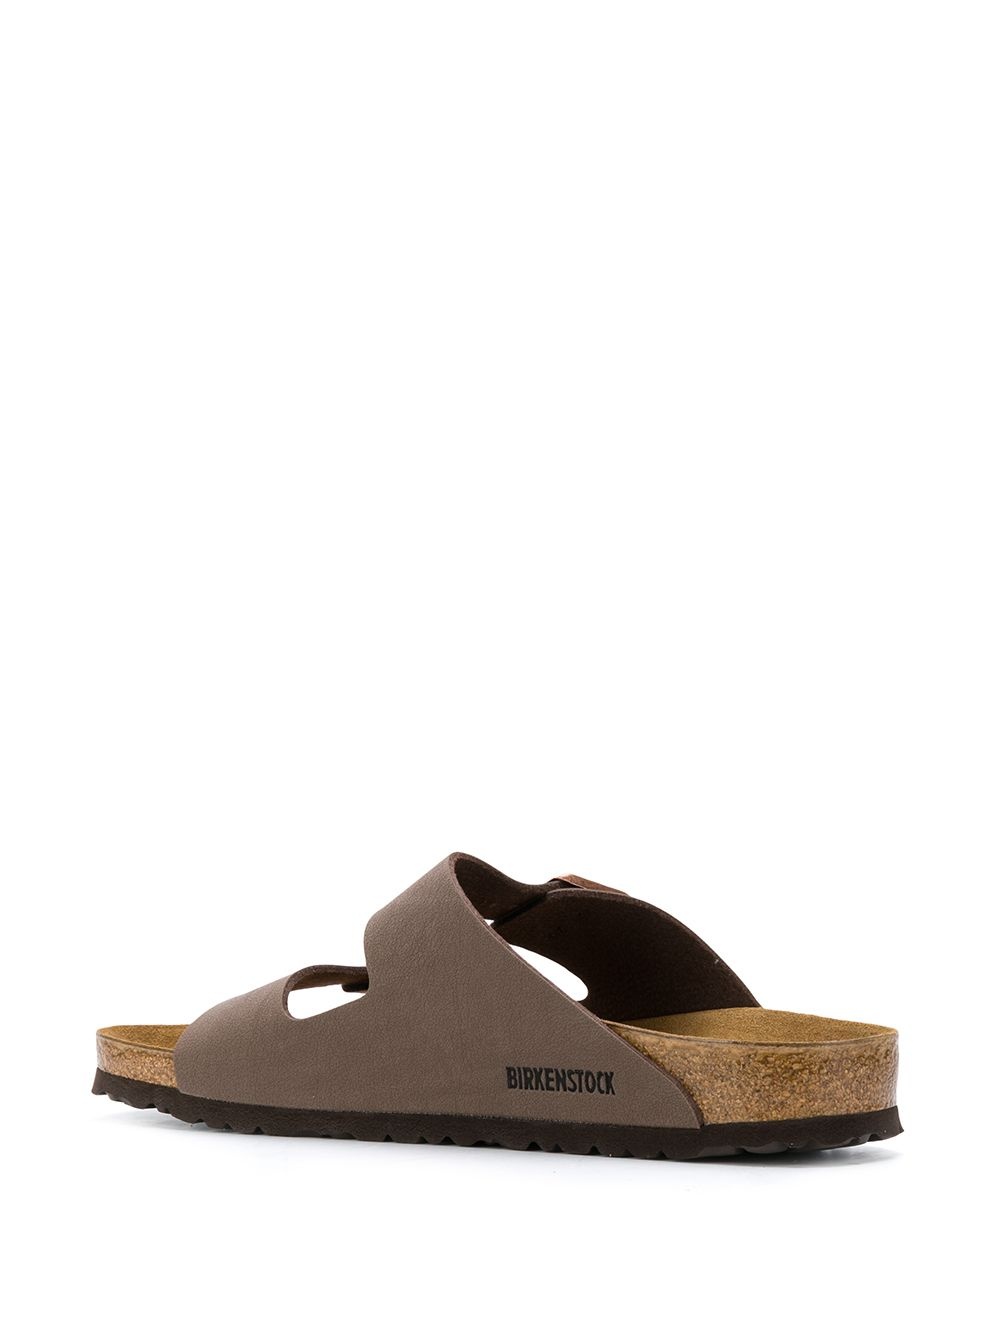 Arizona sandals - 2